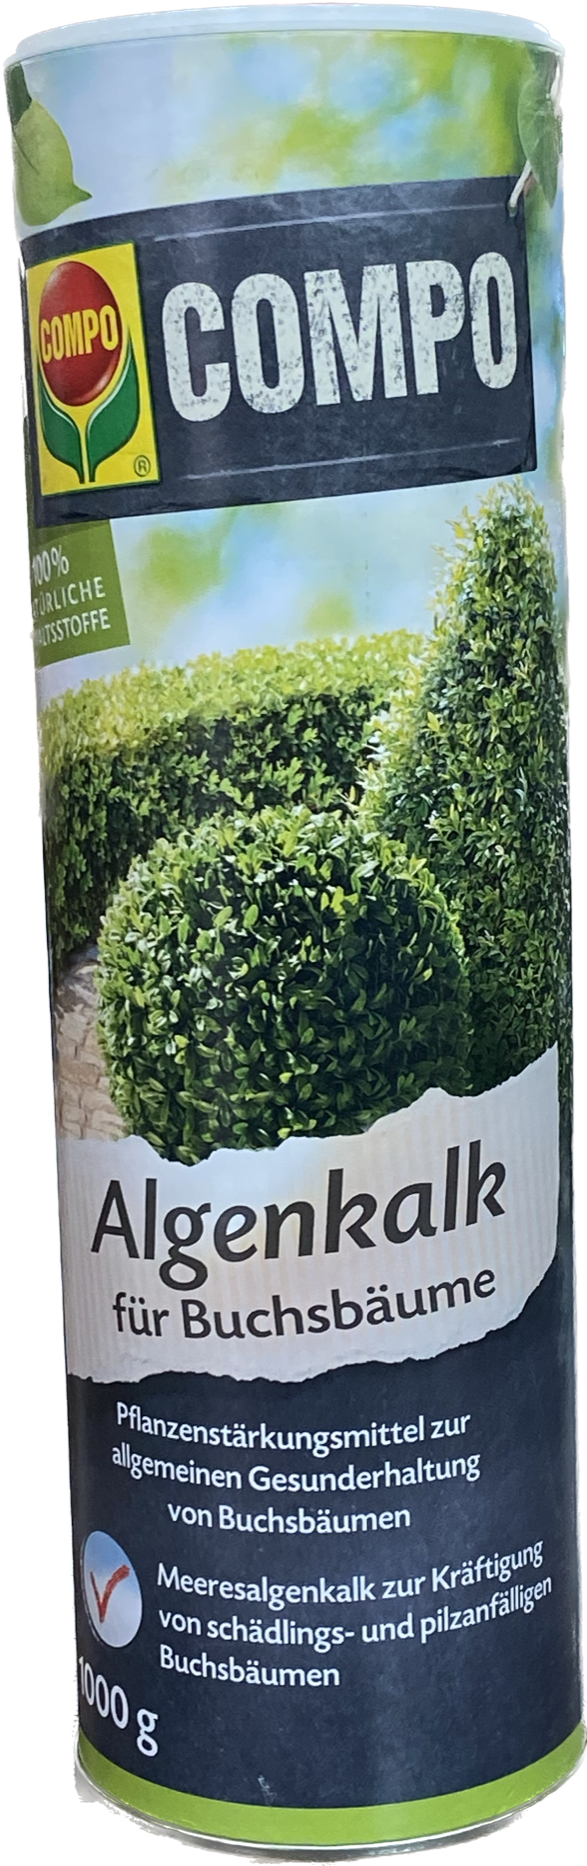 Compo  Algenkalk für Buchsbäume 1 kg